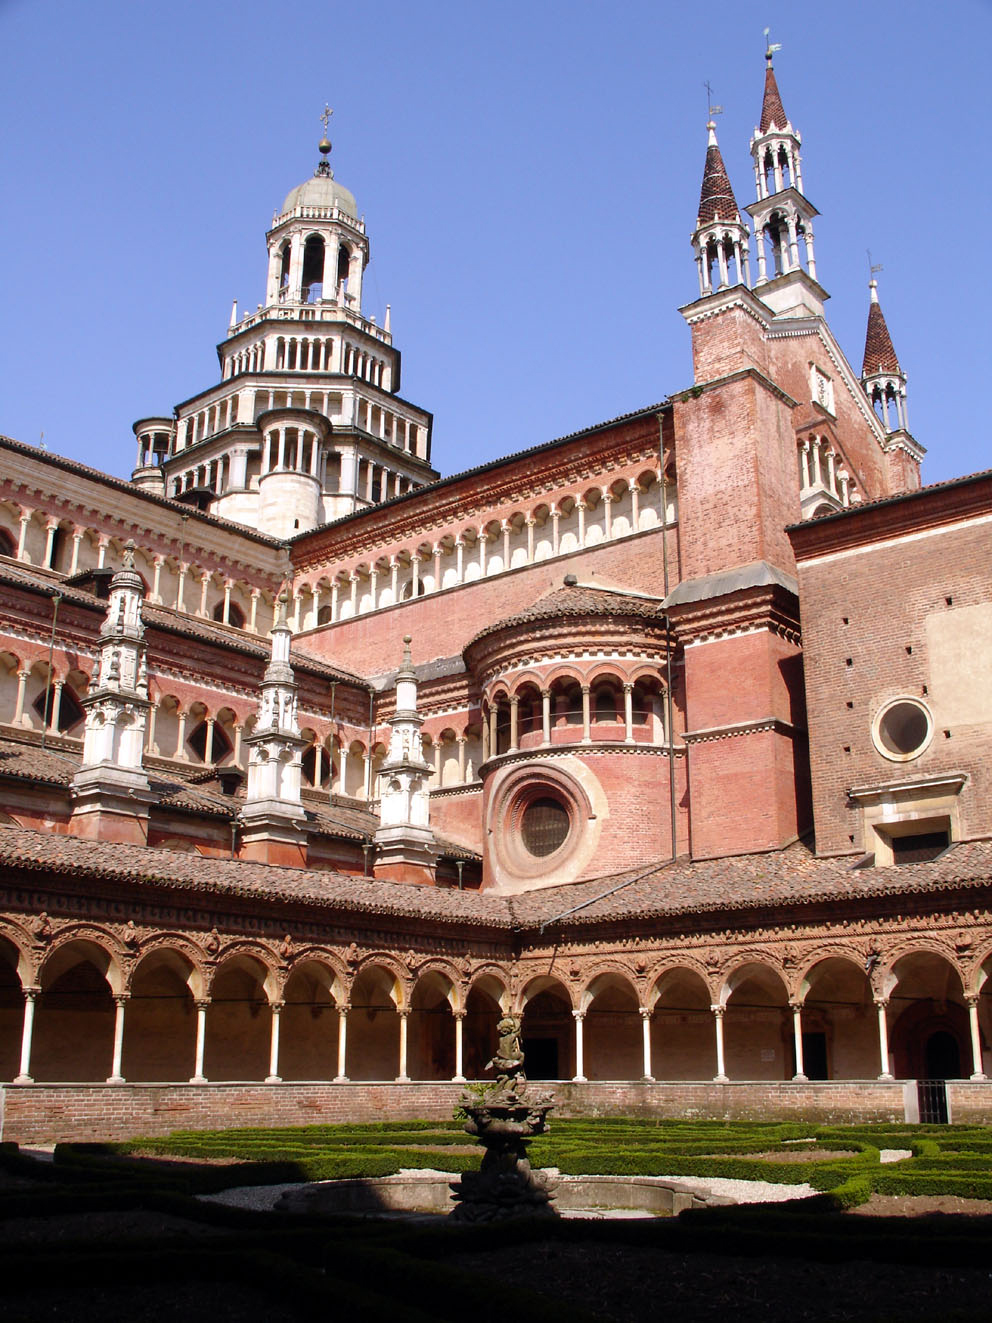 Blick in den kleinen Kreuzgang der Certosa di Pavia, im Hintergrund die Klosterkirche.